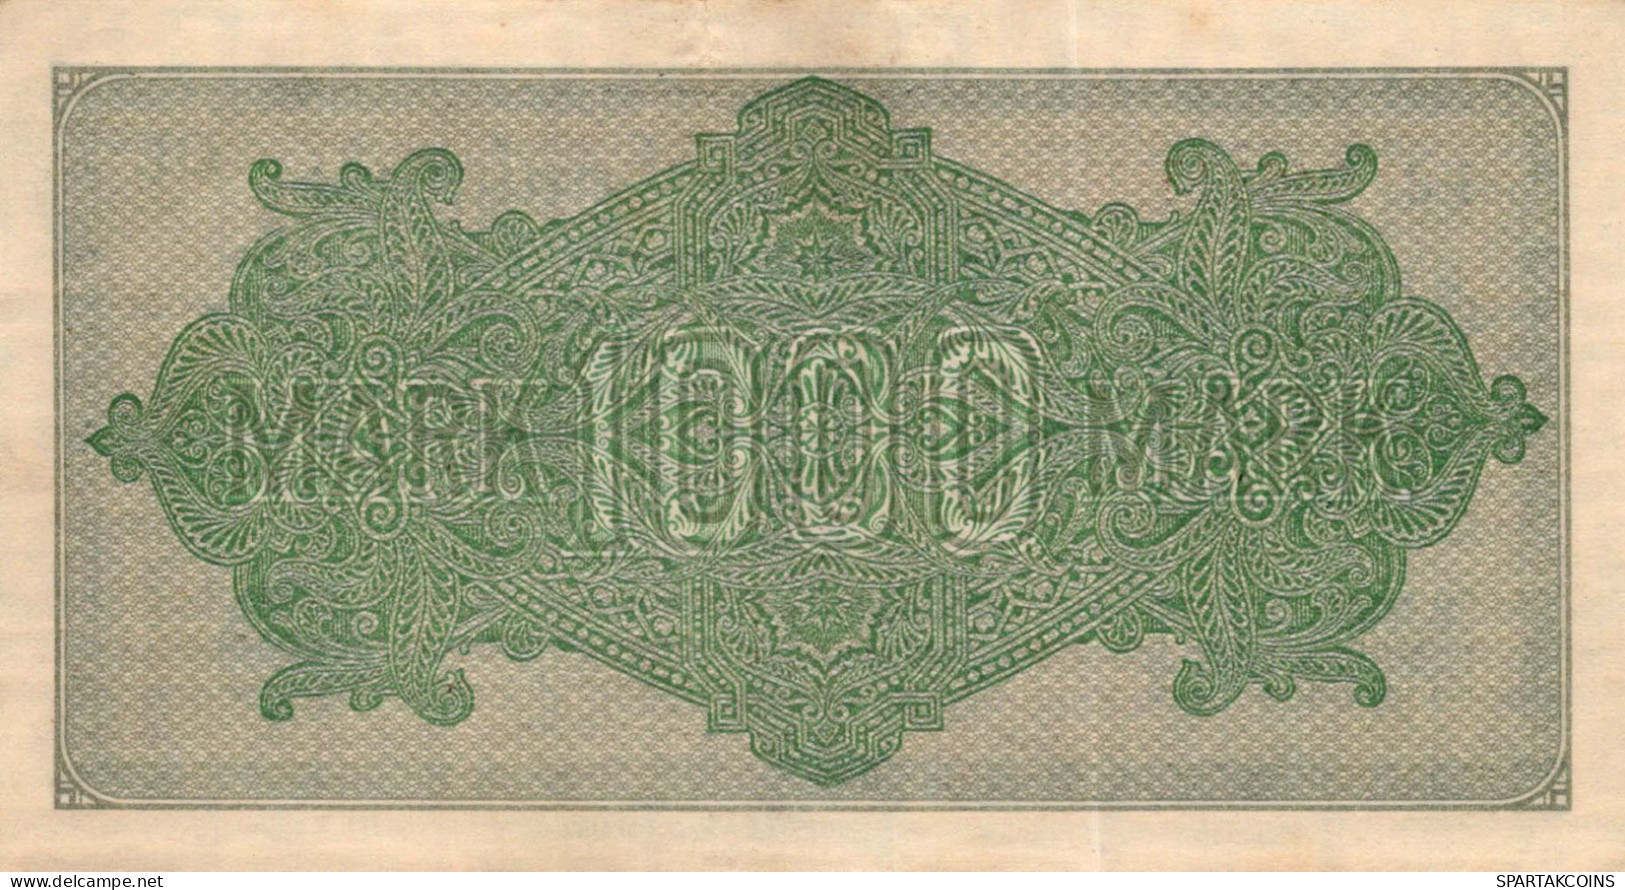 1000 MARK 1922 Stadt BERLIN DEUTSCHLAND Papiergeld Banknote #PL421 - [11] Local Banknote Issues